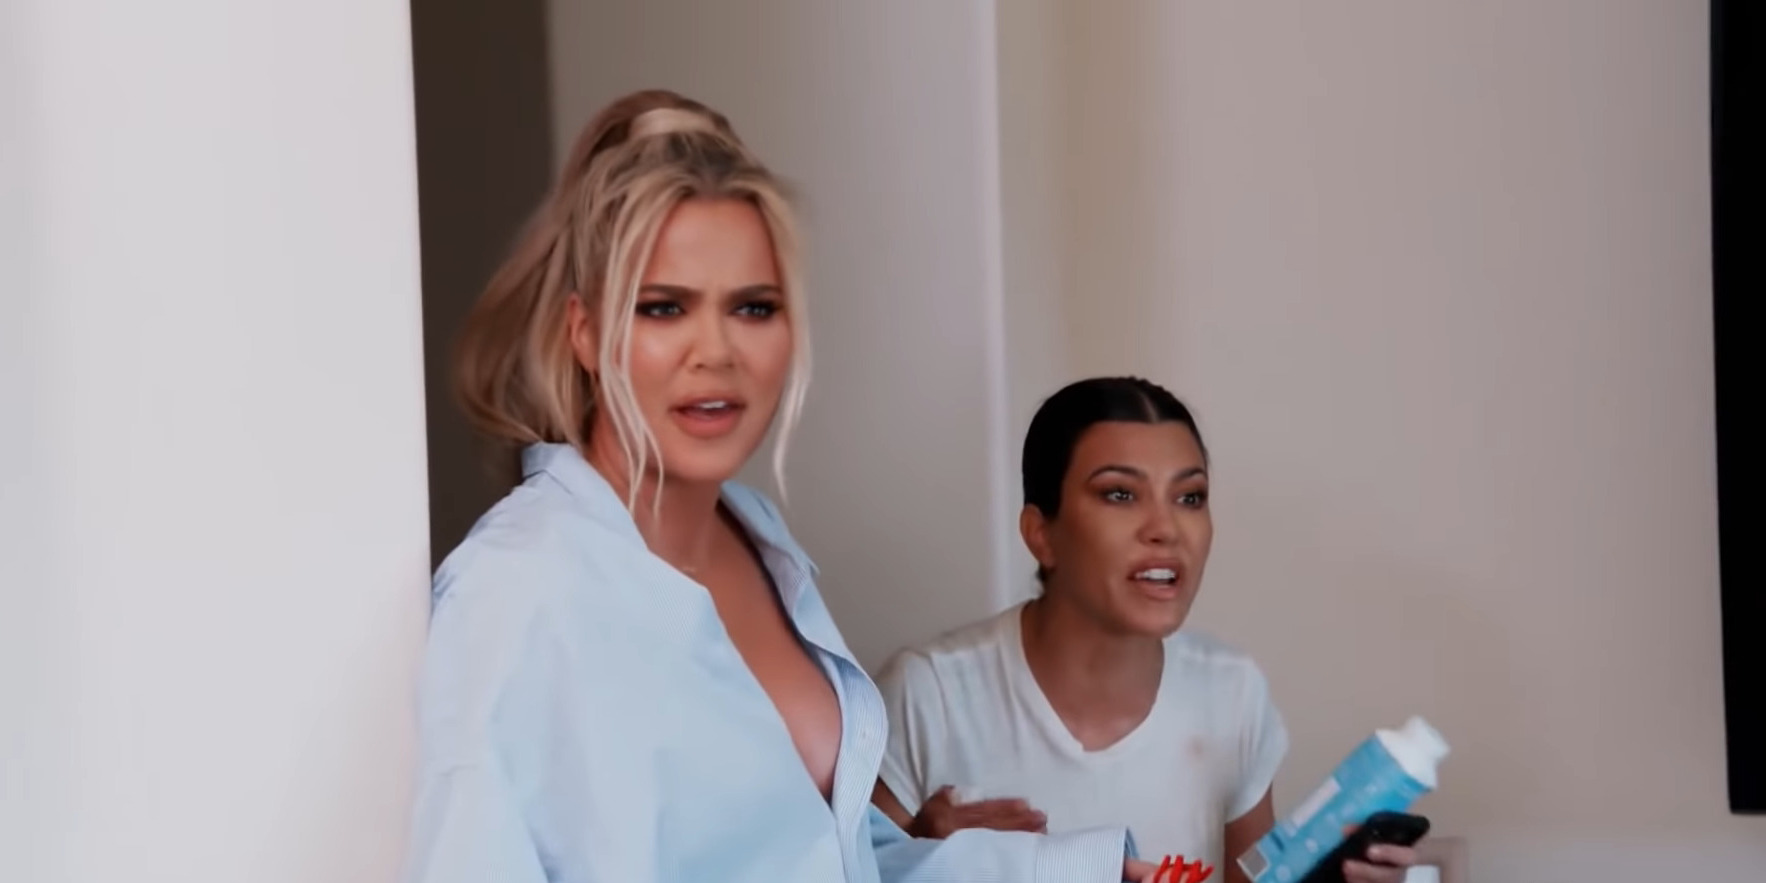 Keeping Up with The Kardashians Season 18 Episode 3 Episode 2 recap